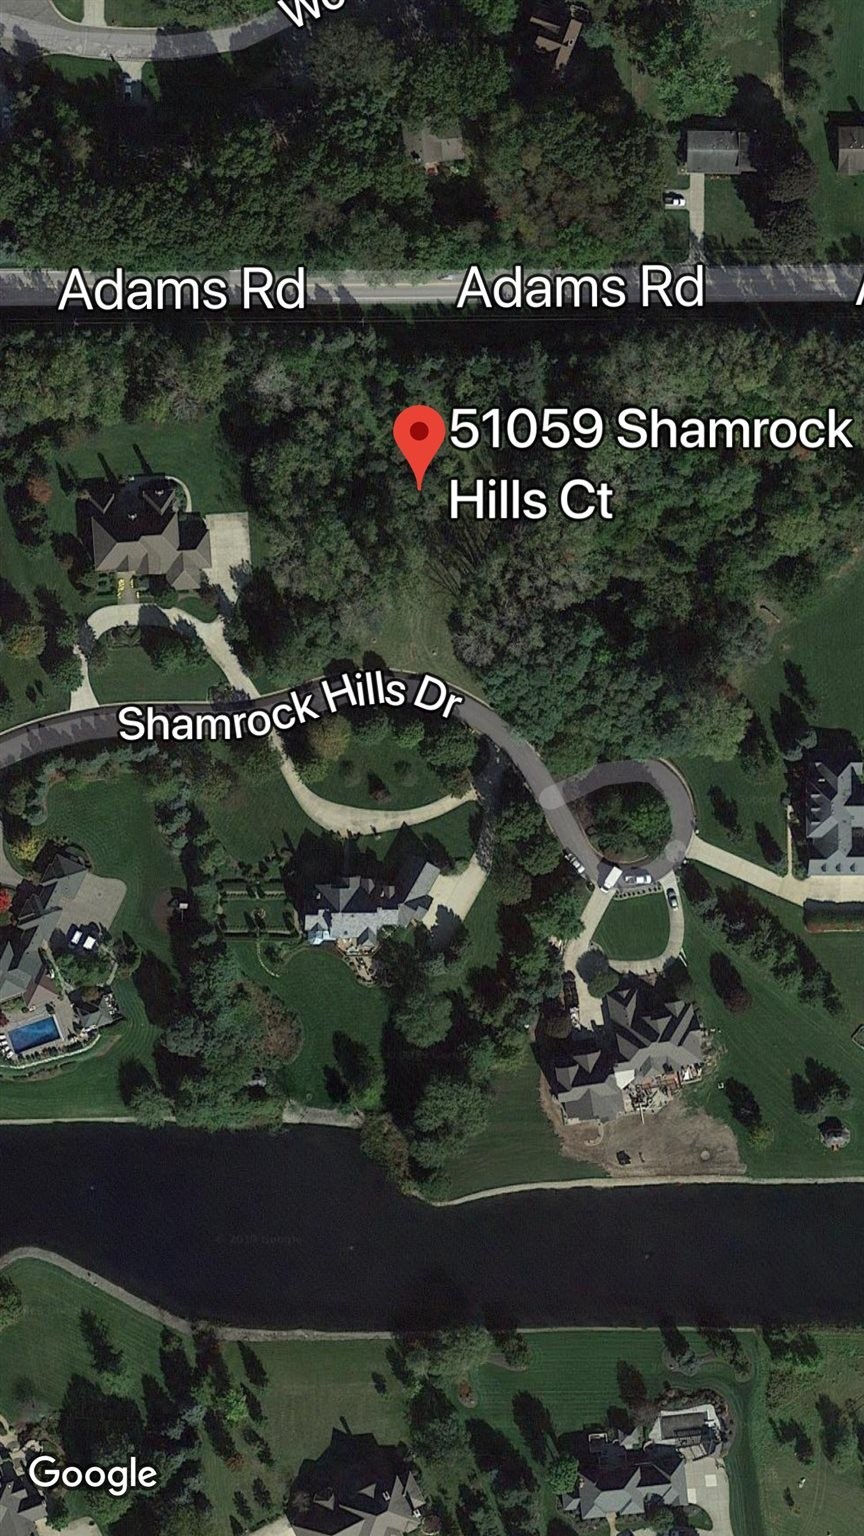 2. 51059 Shamrock Hills Court